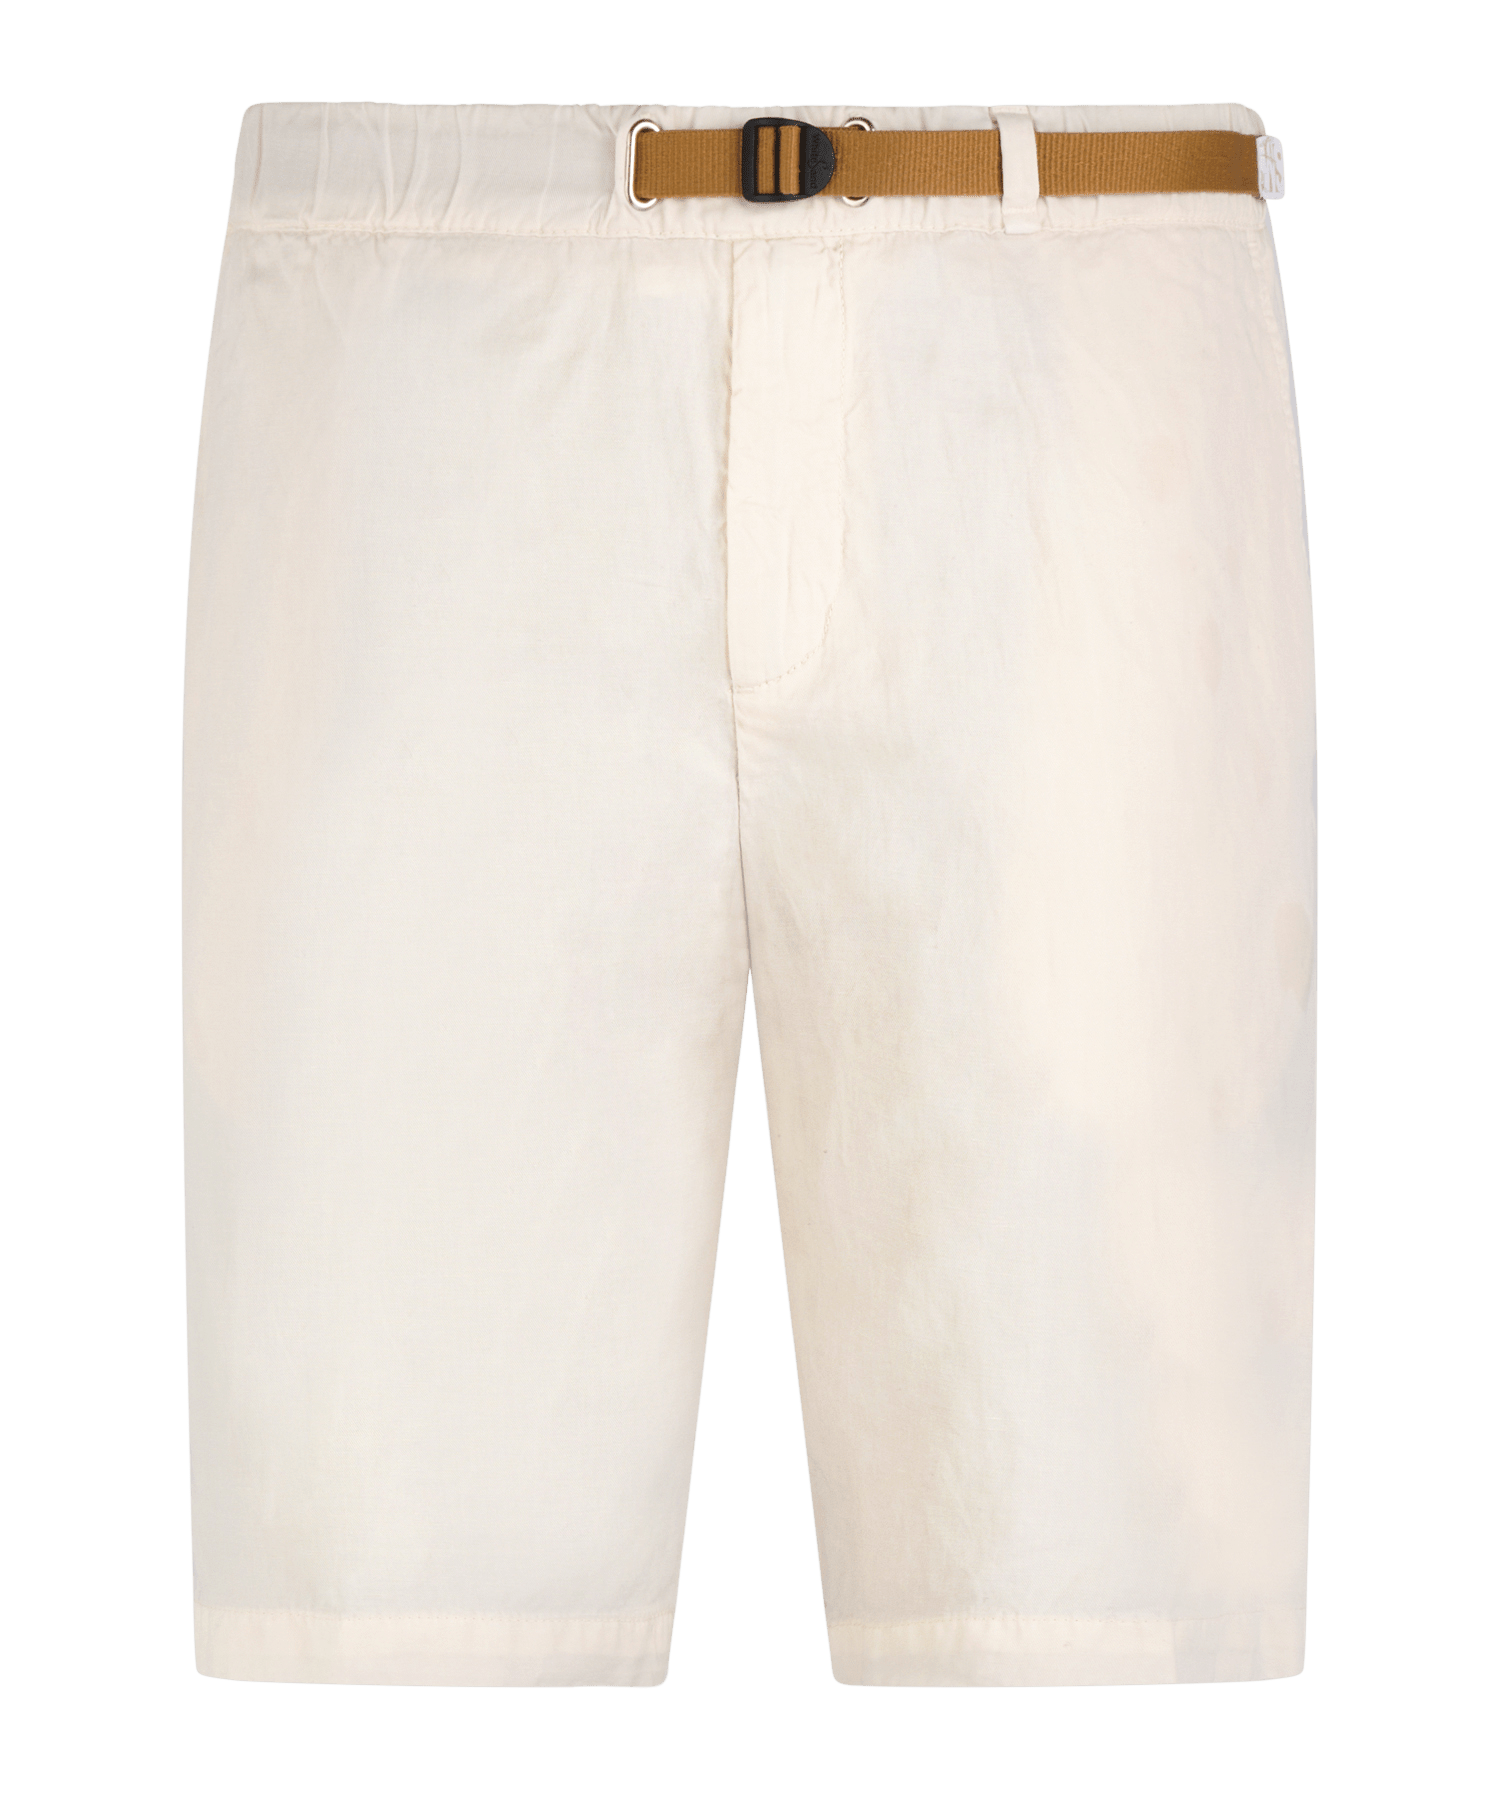 White Sand Short linnen/katoen off-white - The Society Shop